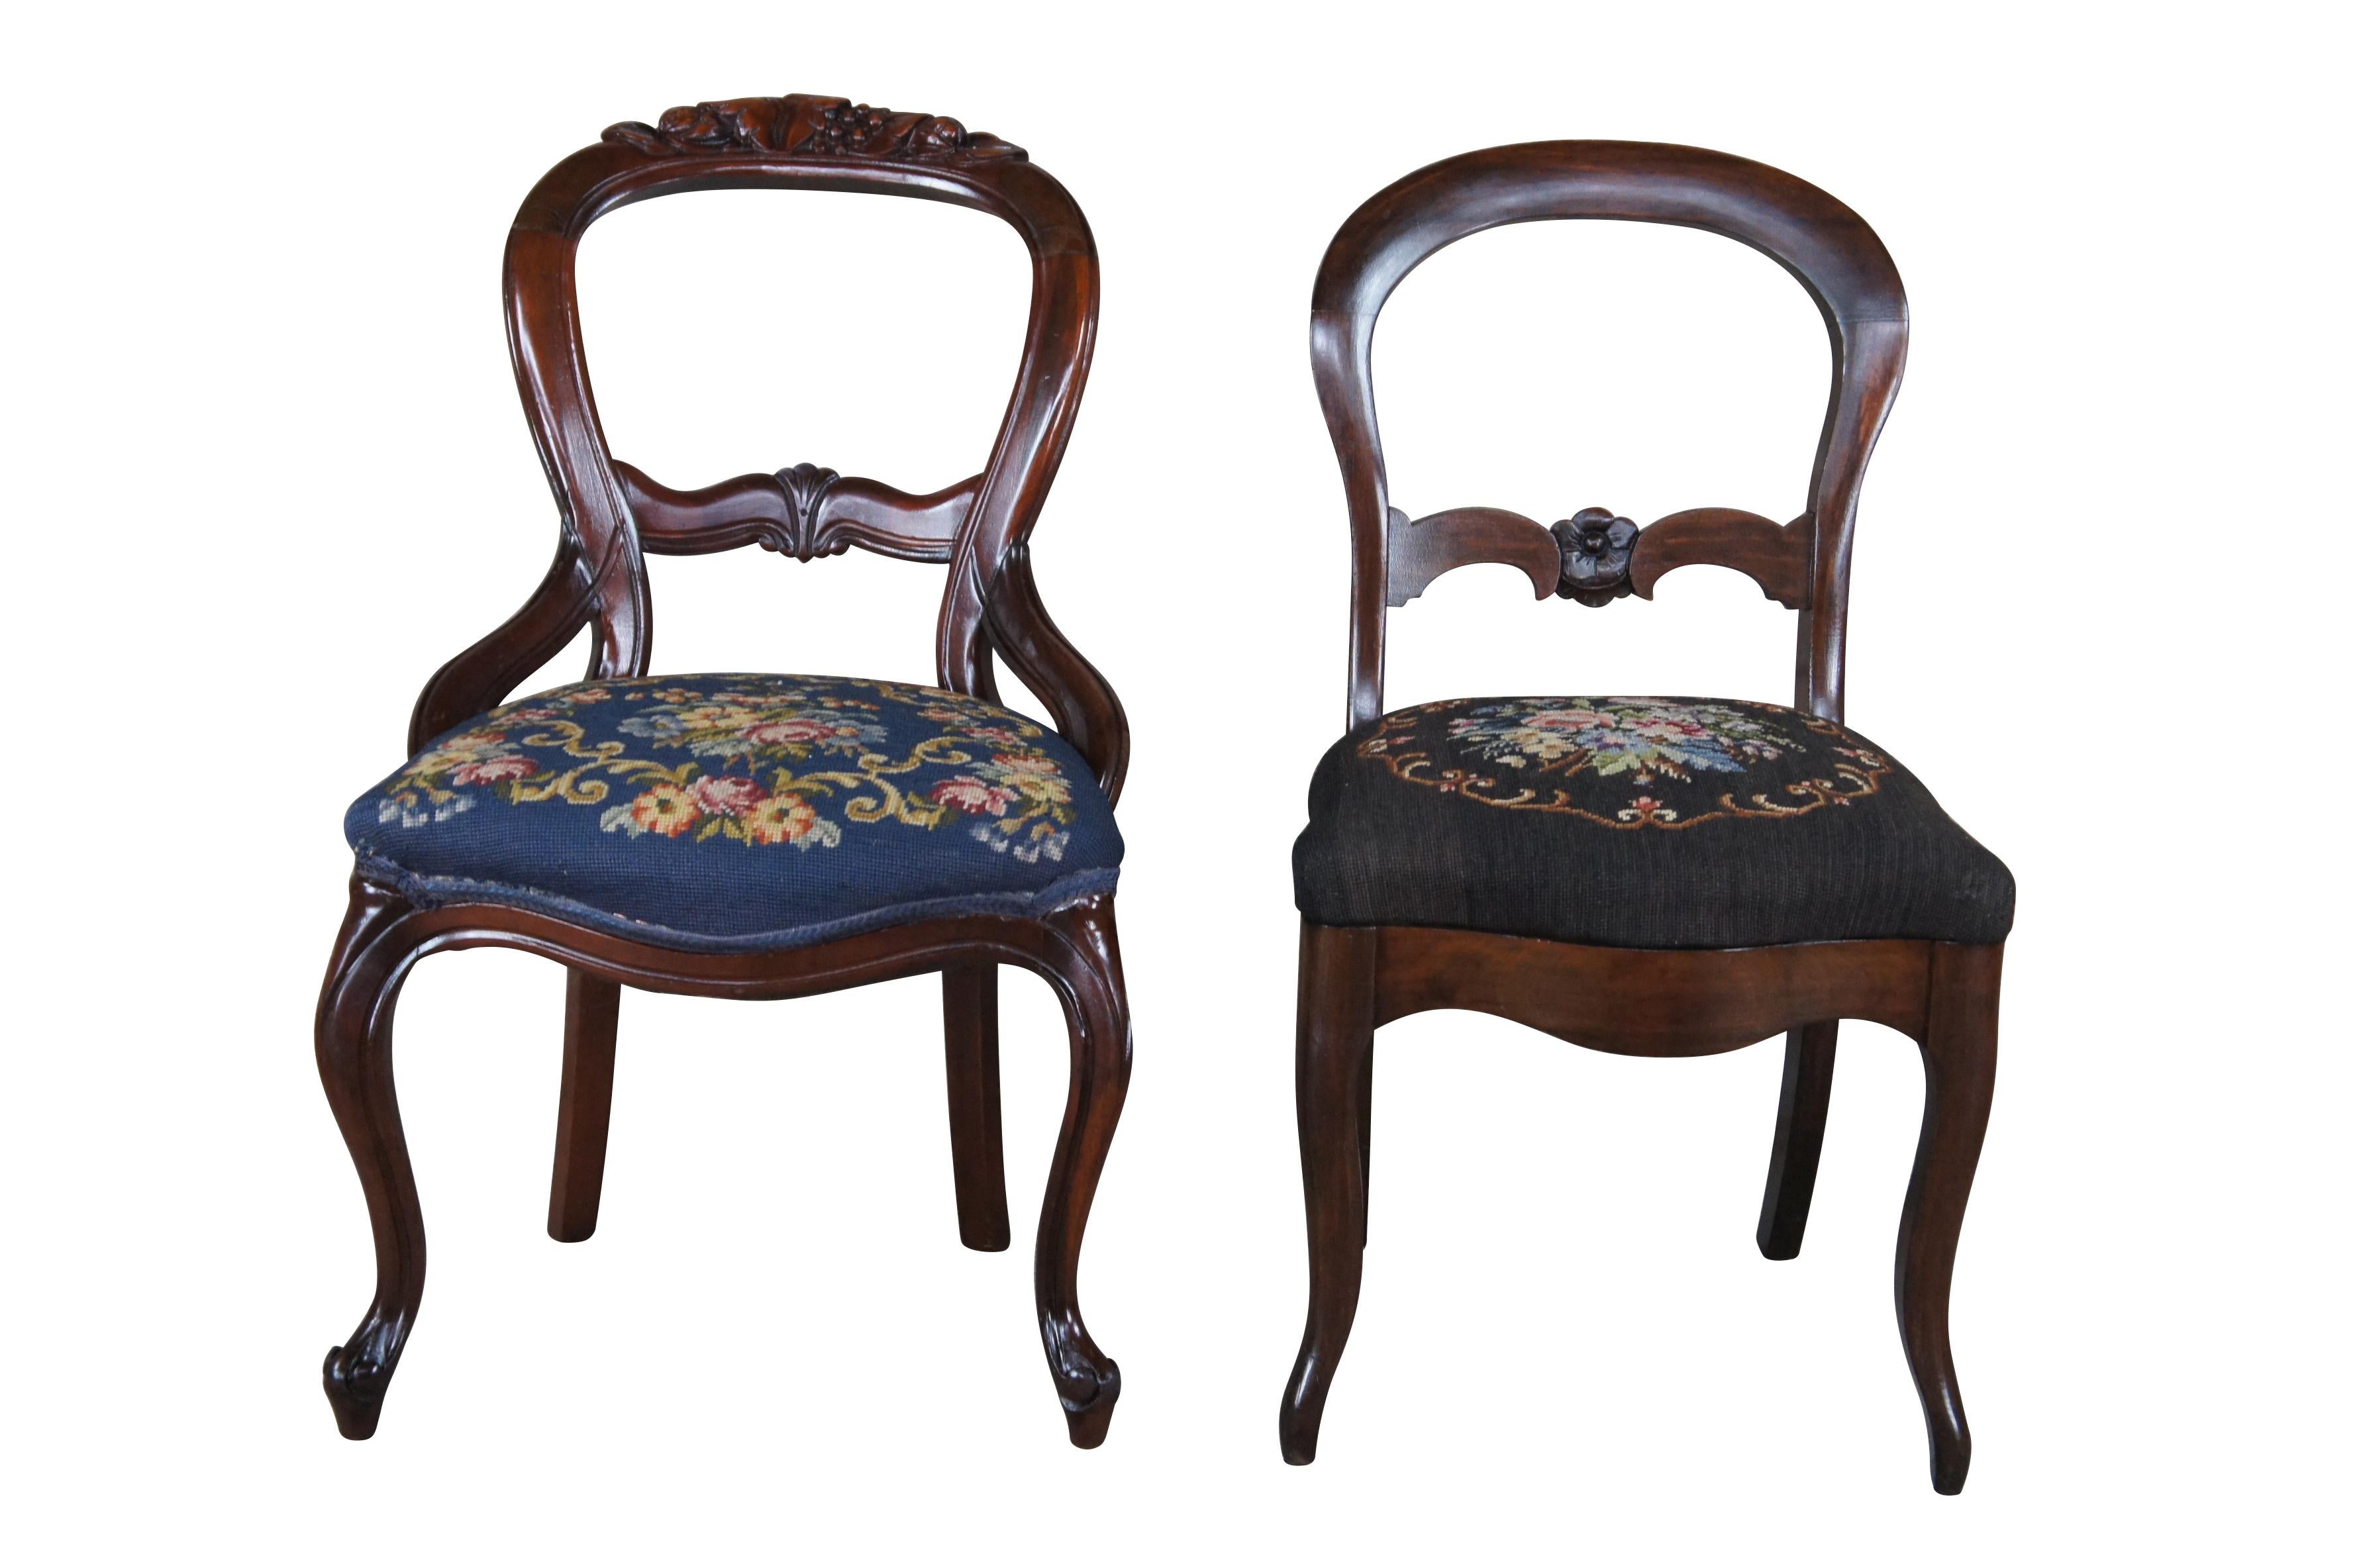 Posten von 4 viktorianischen Ess- oder Beistellstühlen aus der letzten Hälfte des 19. Jahrhunderts.  Jedes Stück ist aus Mahagoni mit geschnitztem Ballonrücken und floraler Nadelspitze gefertigt.  Jeder der Stühle hat eine serpentinenförmige